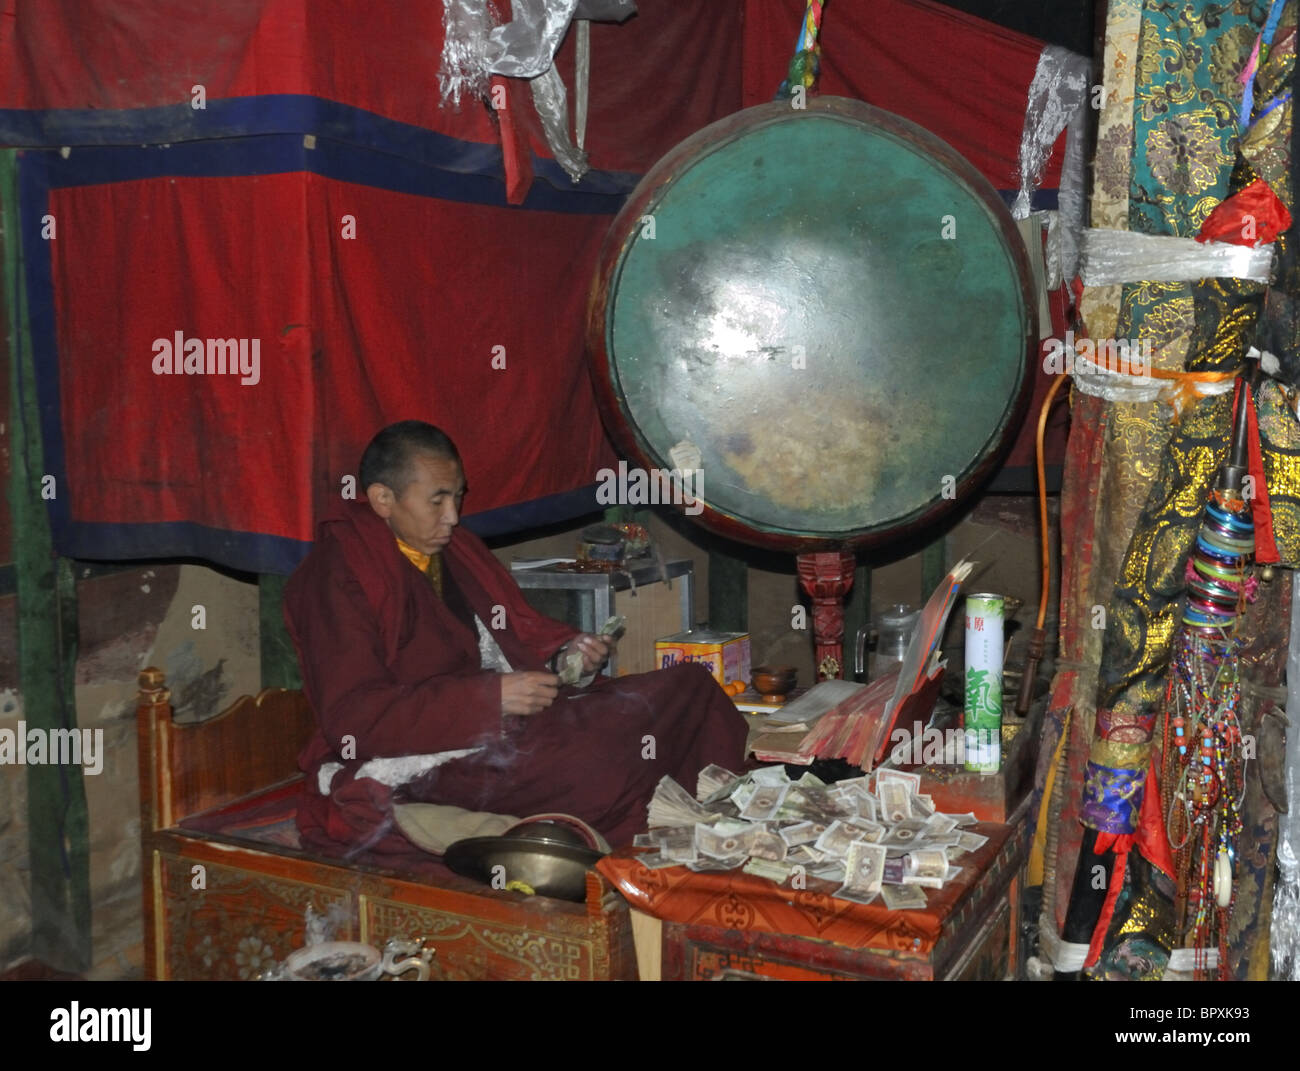 Monk with gong, Samye Monastery, Tibet. Stock Photo